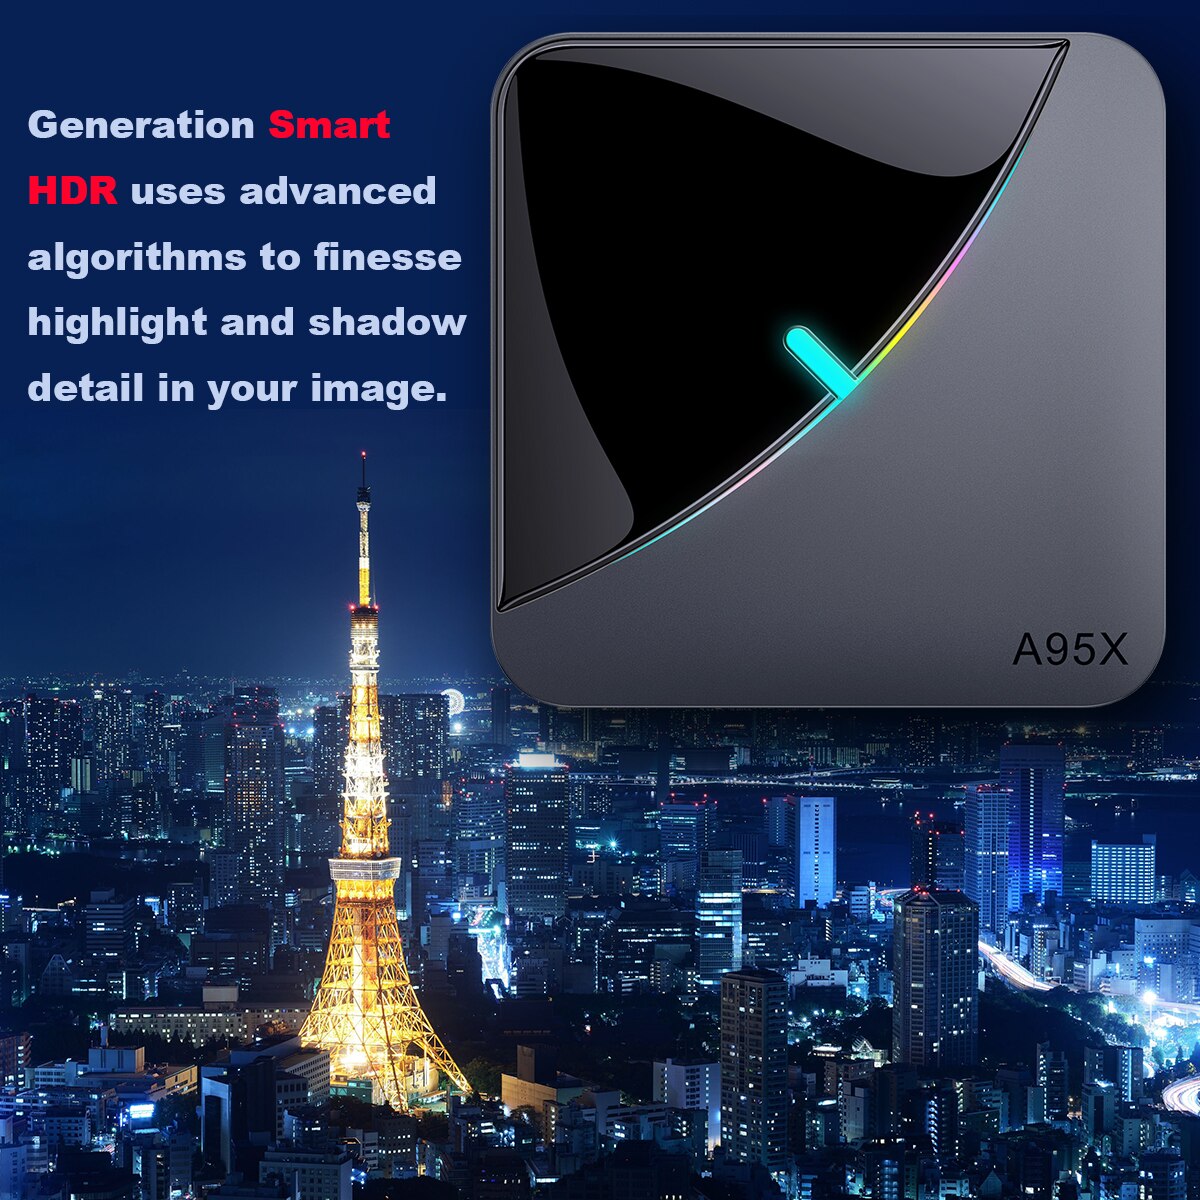 2020-A95X-F3-Air-8K-RGB-Light-Smart-TV-Box-Amlogic-S905X3-Android-90-4GB-64GB-Plex-media-server-Supp-4000270725589